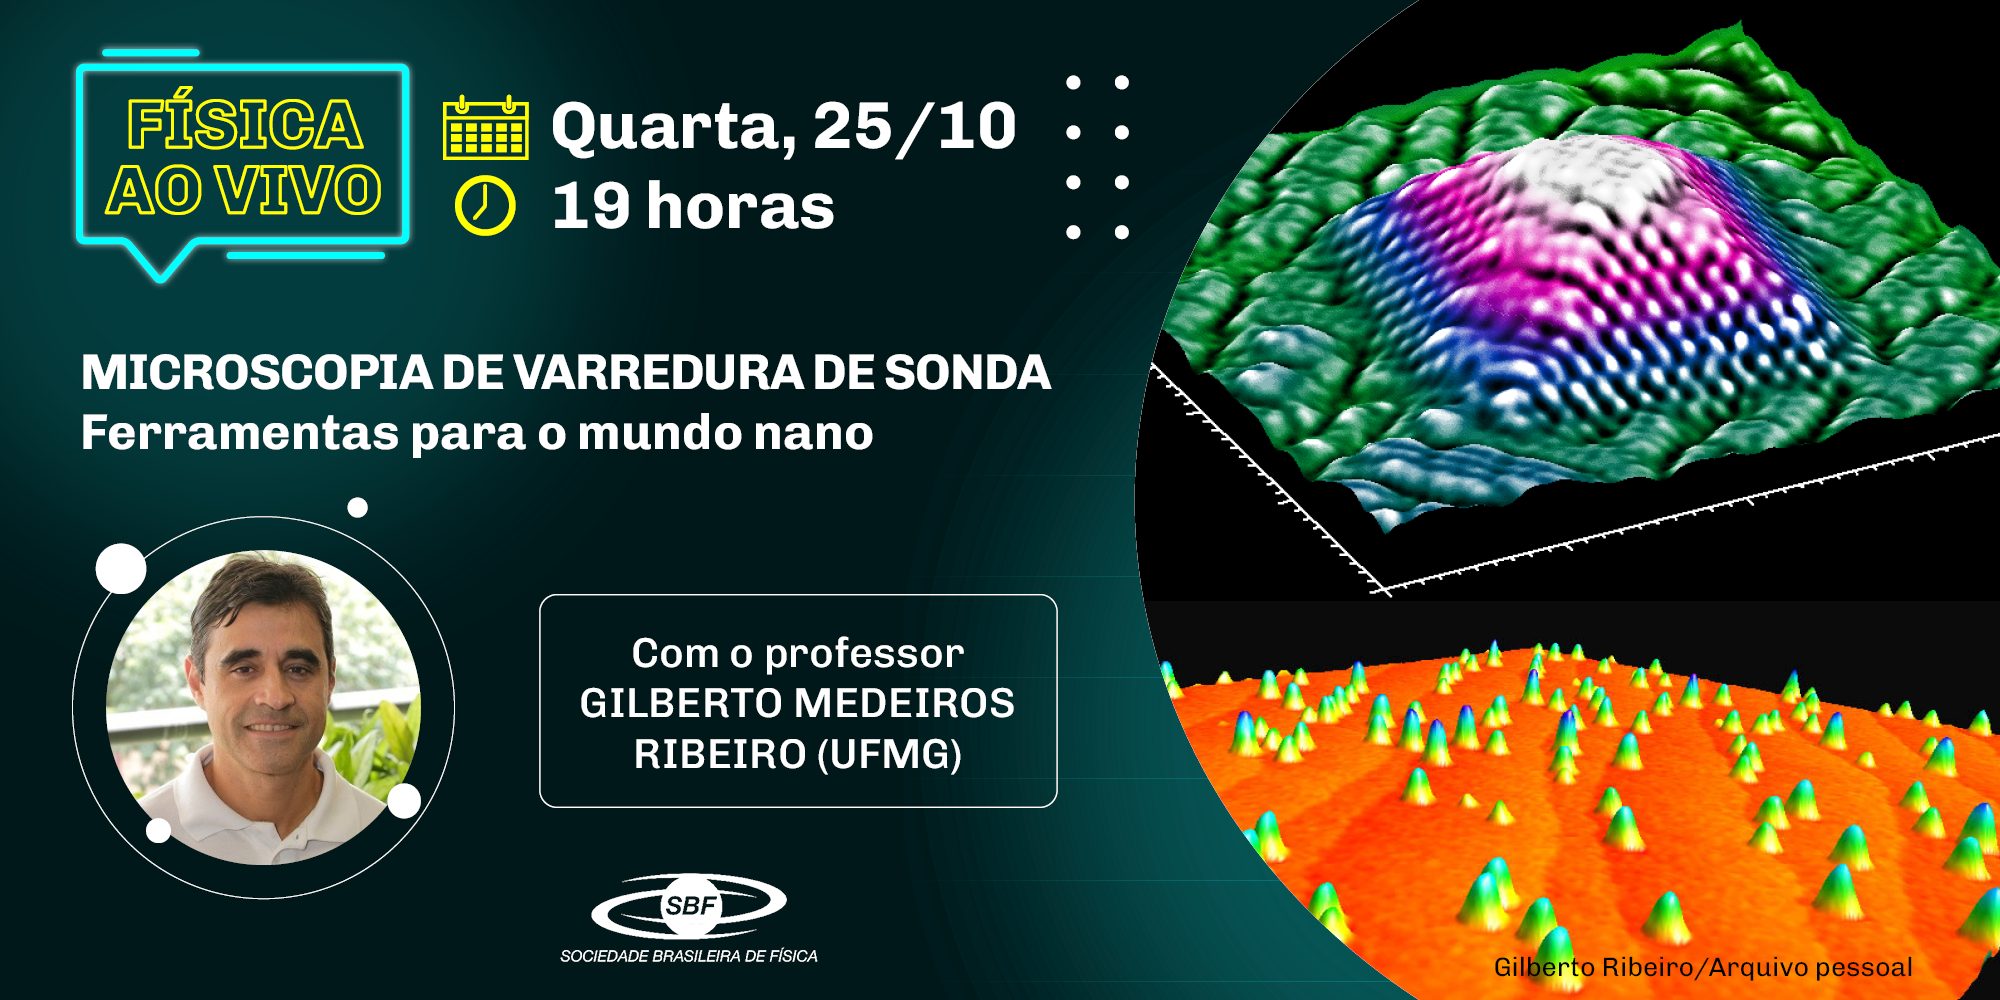 Física ao Vivo – Gilberto Medeiros Ribeiro – Microscopia de varredura de sonda – ferramentas para o mundo nano